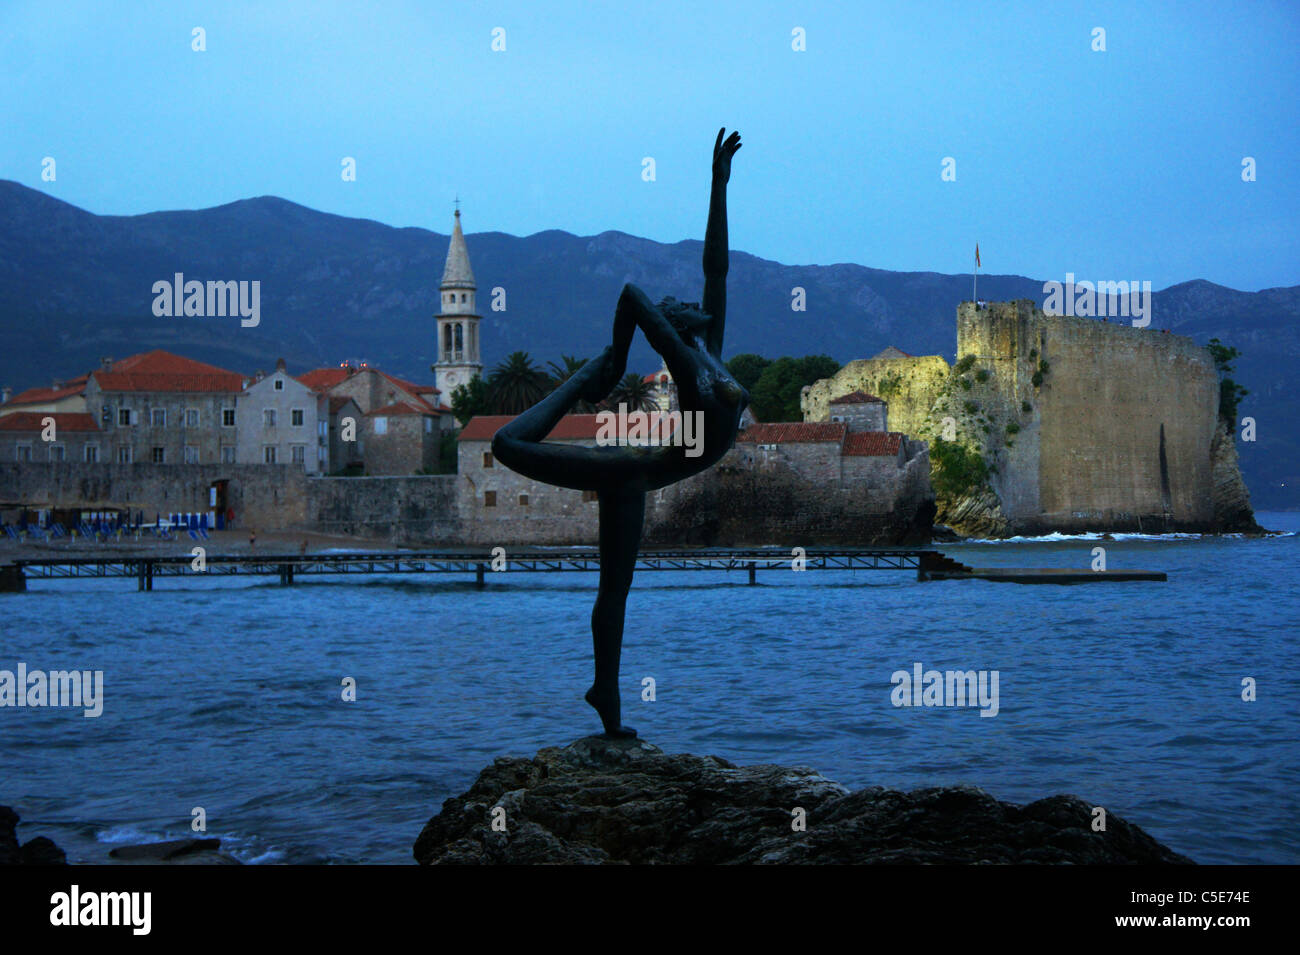 Città vecchia di Budva e Danzing ragazza statua, Montenegro, Crna Gora Foto Stock